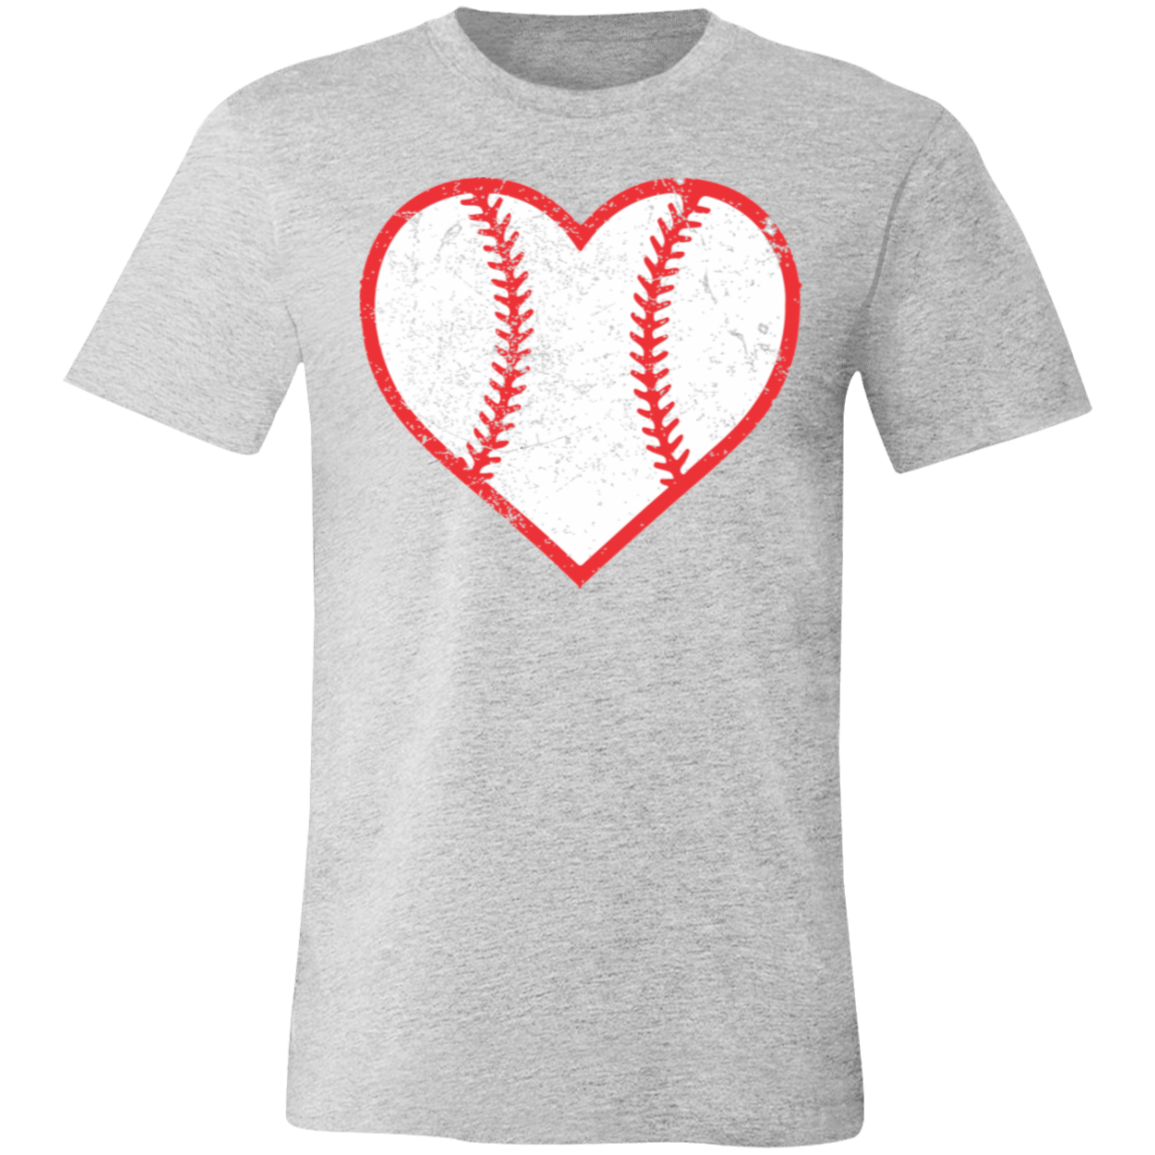 Baseball Heart Premium Women's Tee - Game Day Getup